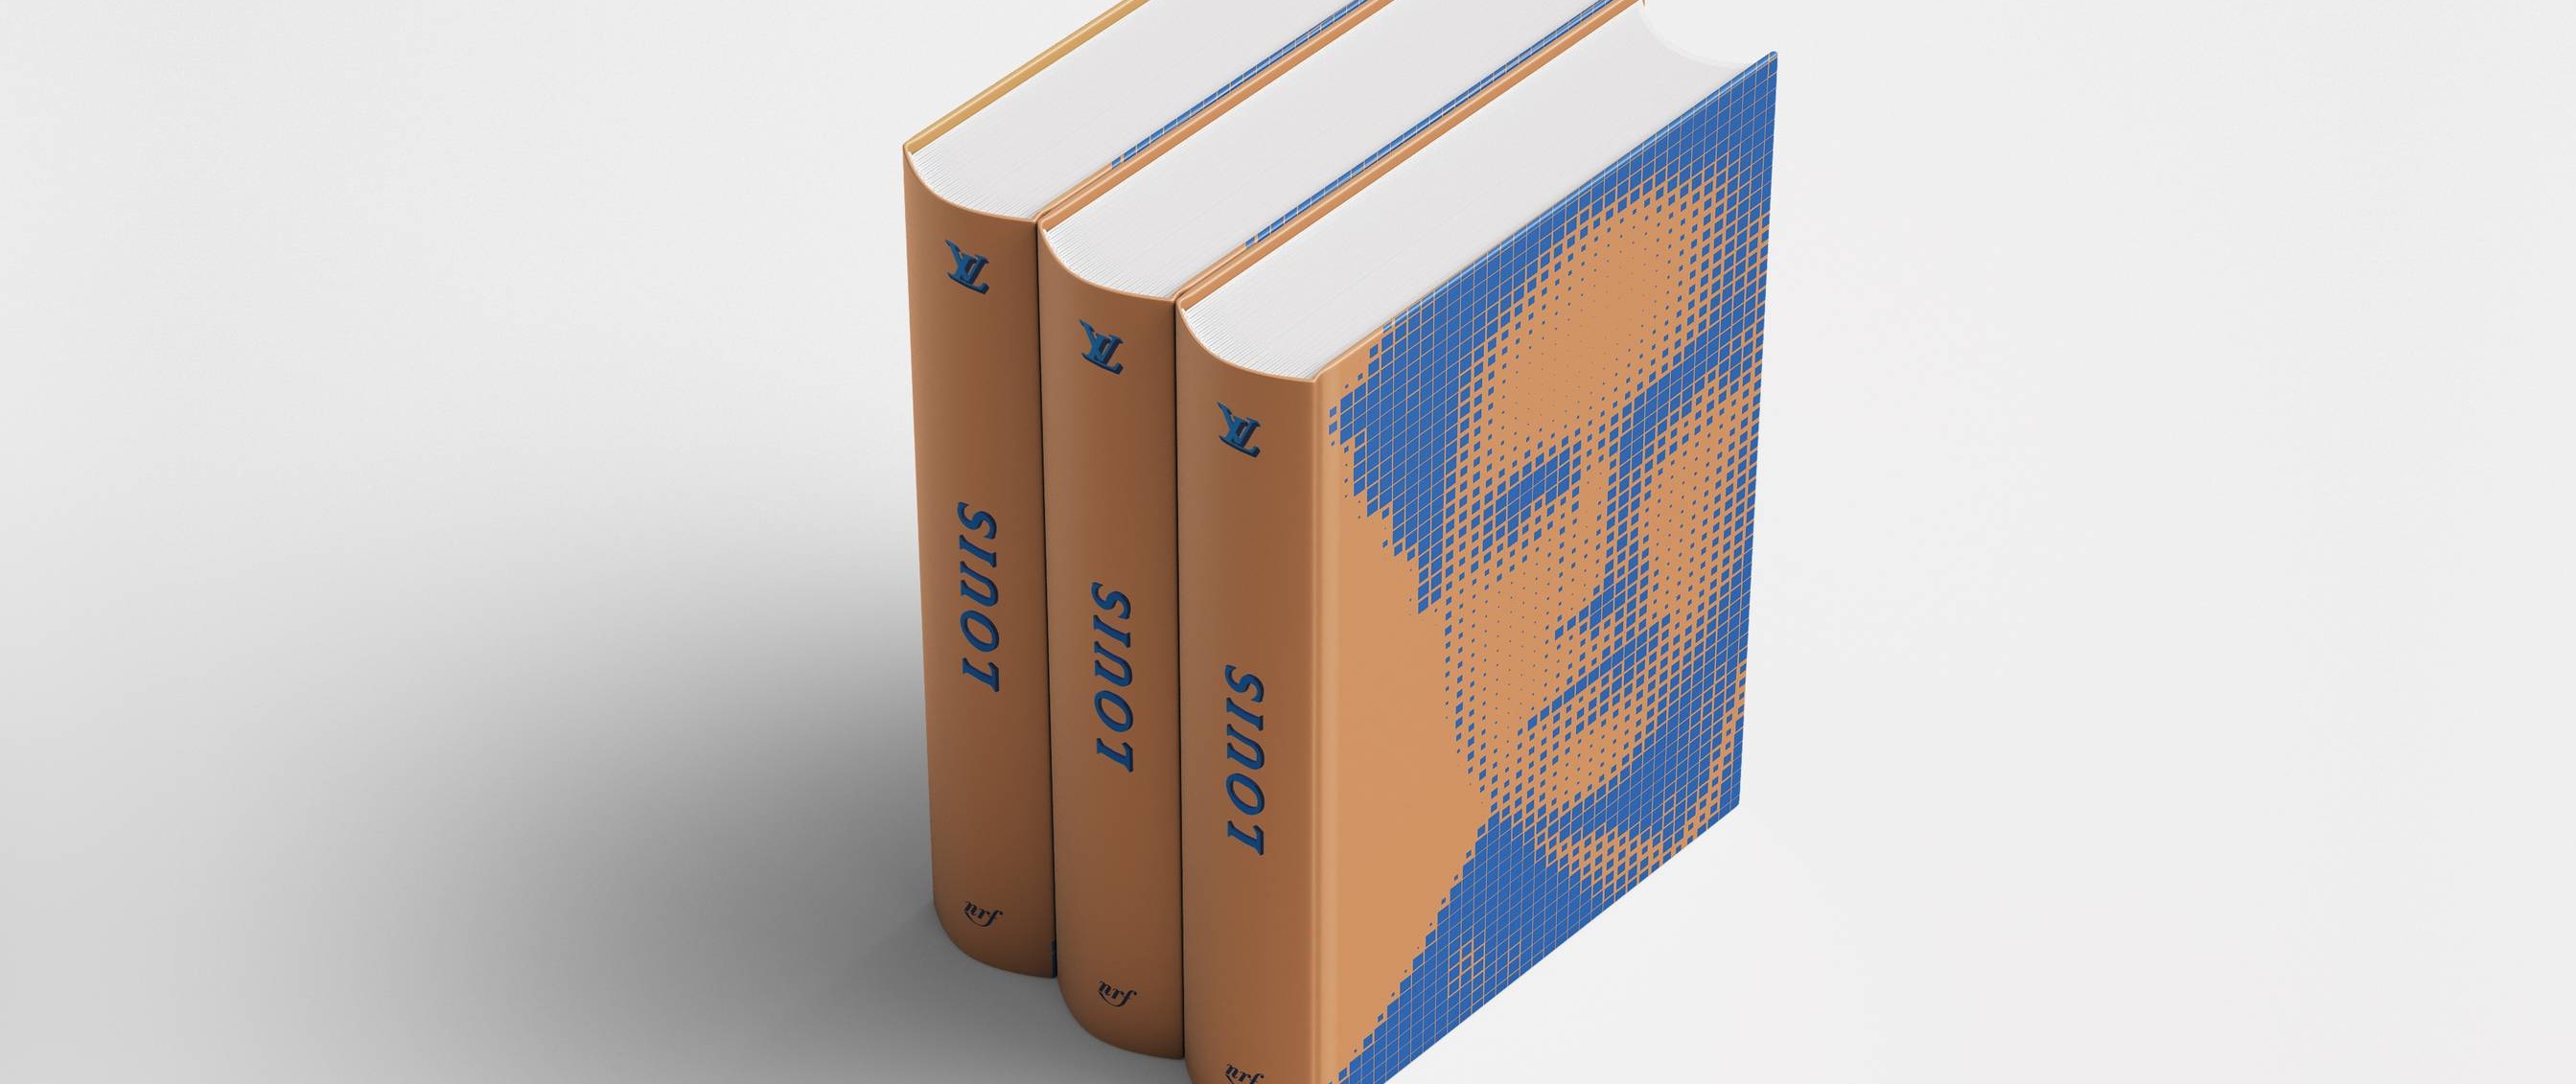 Novel 'Louis Vuitton, l'audacieux' Tells of Founder's Rise